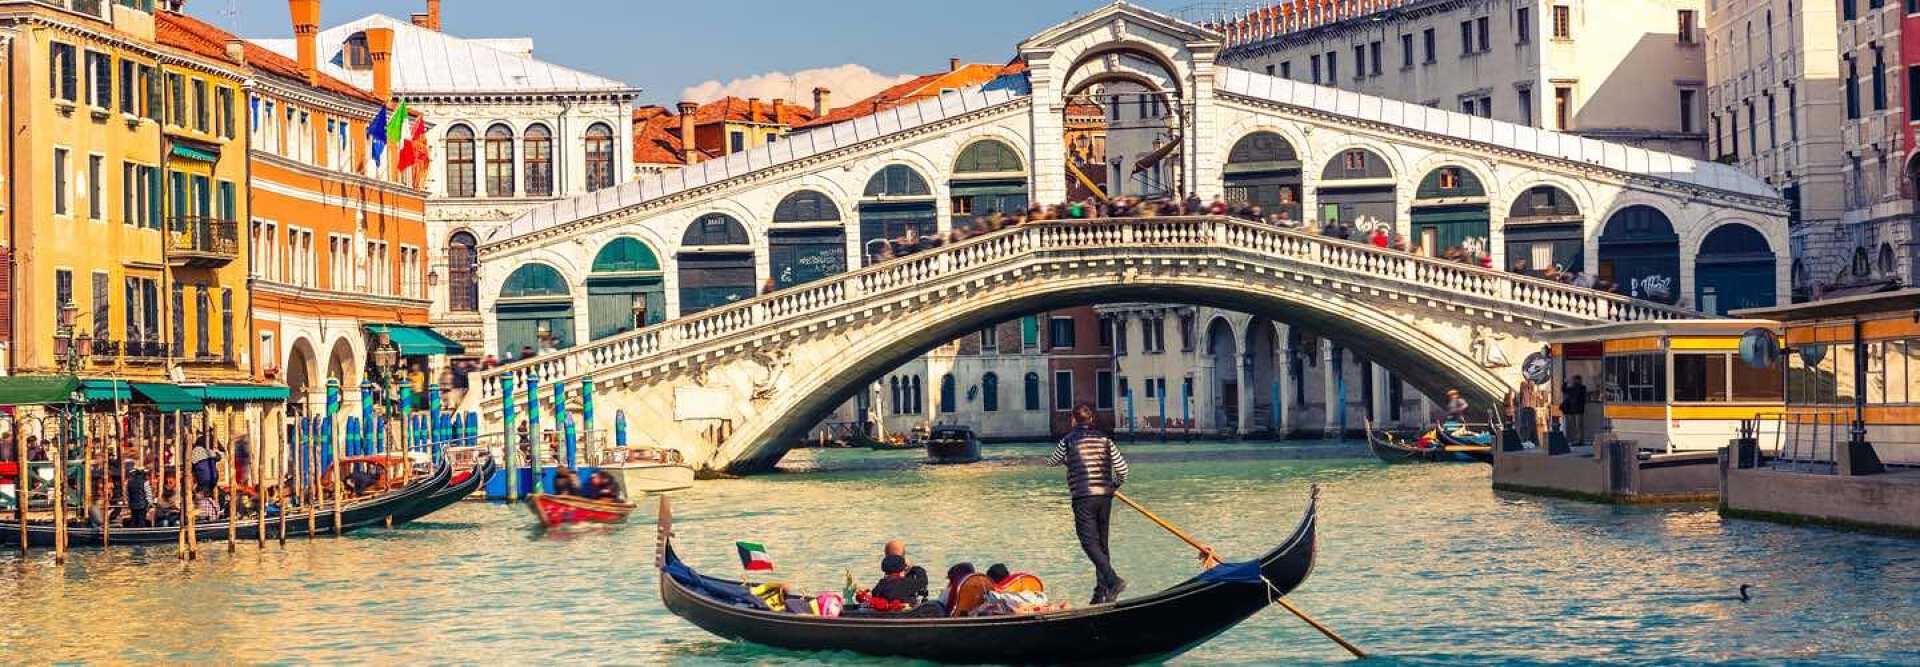 Gondole avec touristes devant le point du Rialto à Venise illustrant la biennale de Venise en Italie